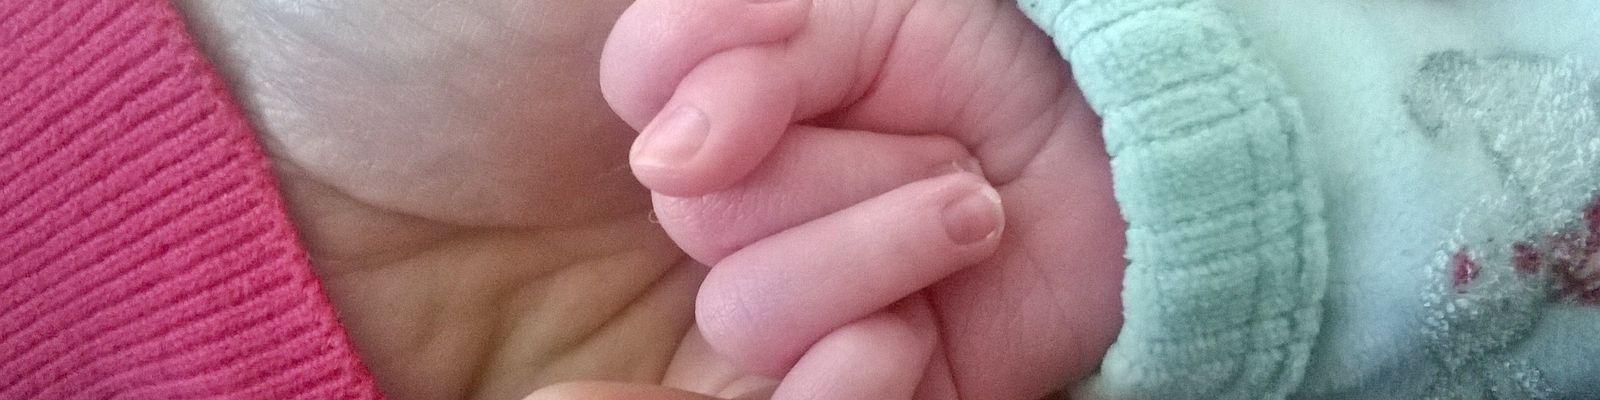 Noëlle & Louise : 1 grossesse & 1 vie différente pour être heureuse